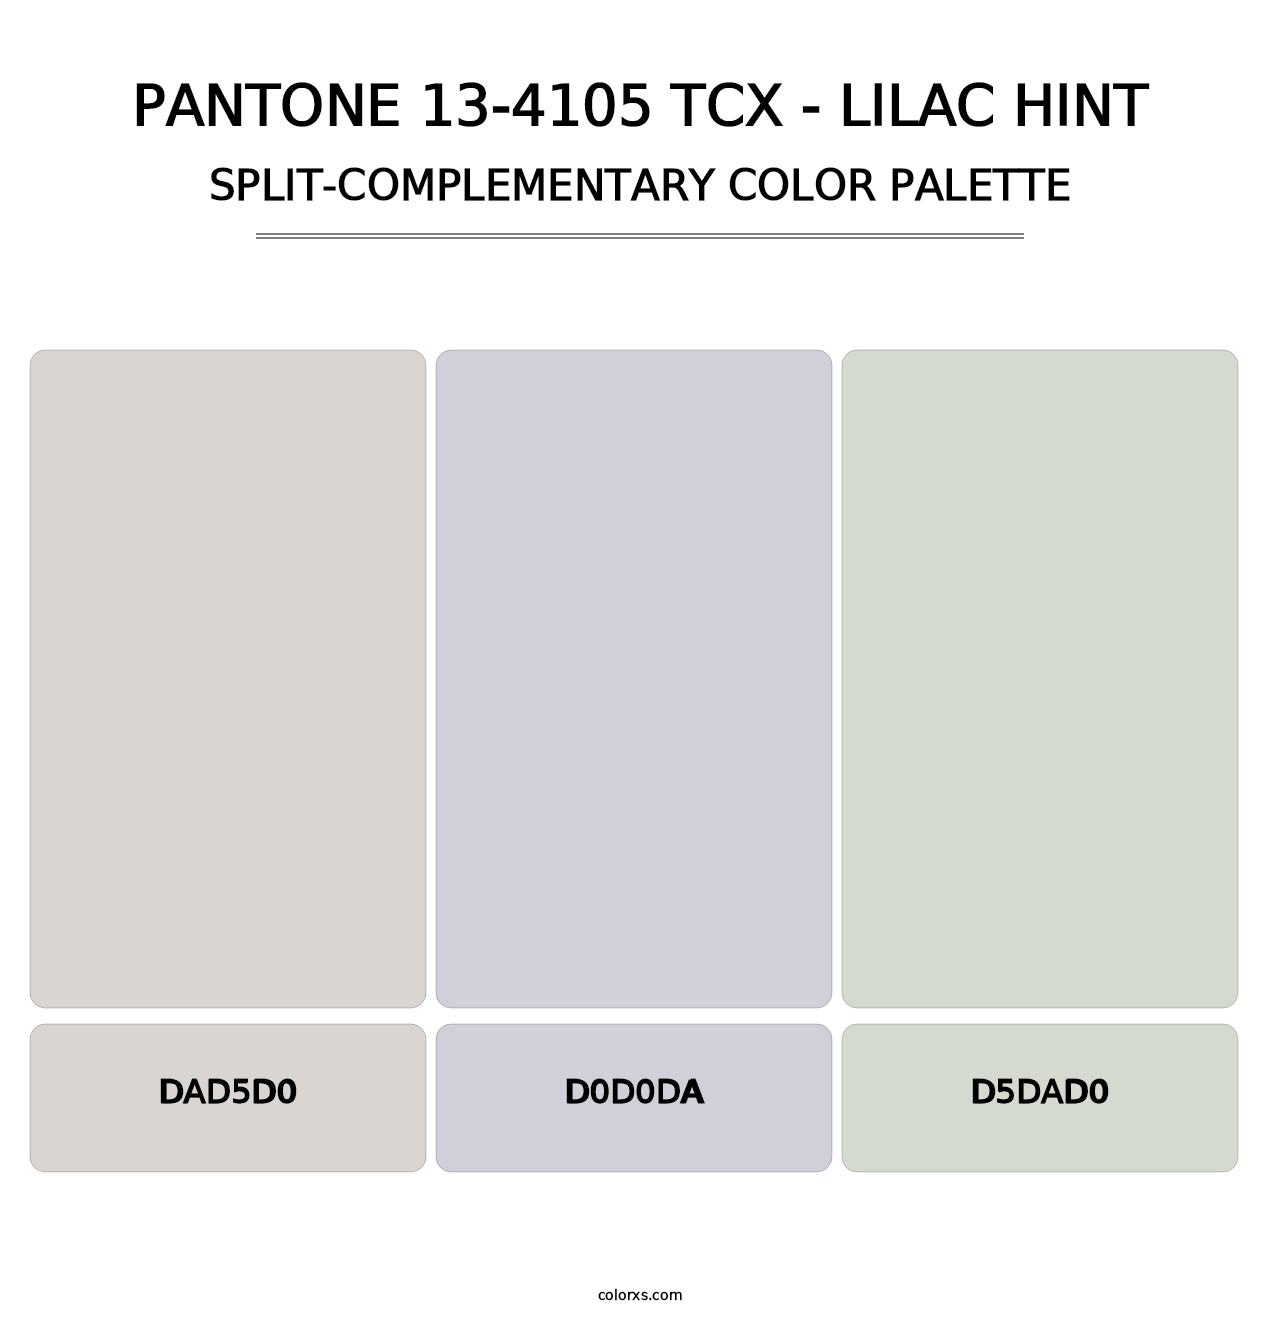 PANTONE 13-4105 TCX - Lilac Hint - Split-Complementary Color Palette